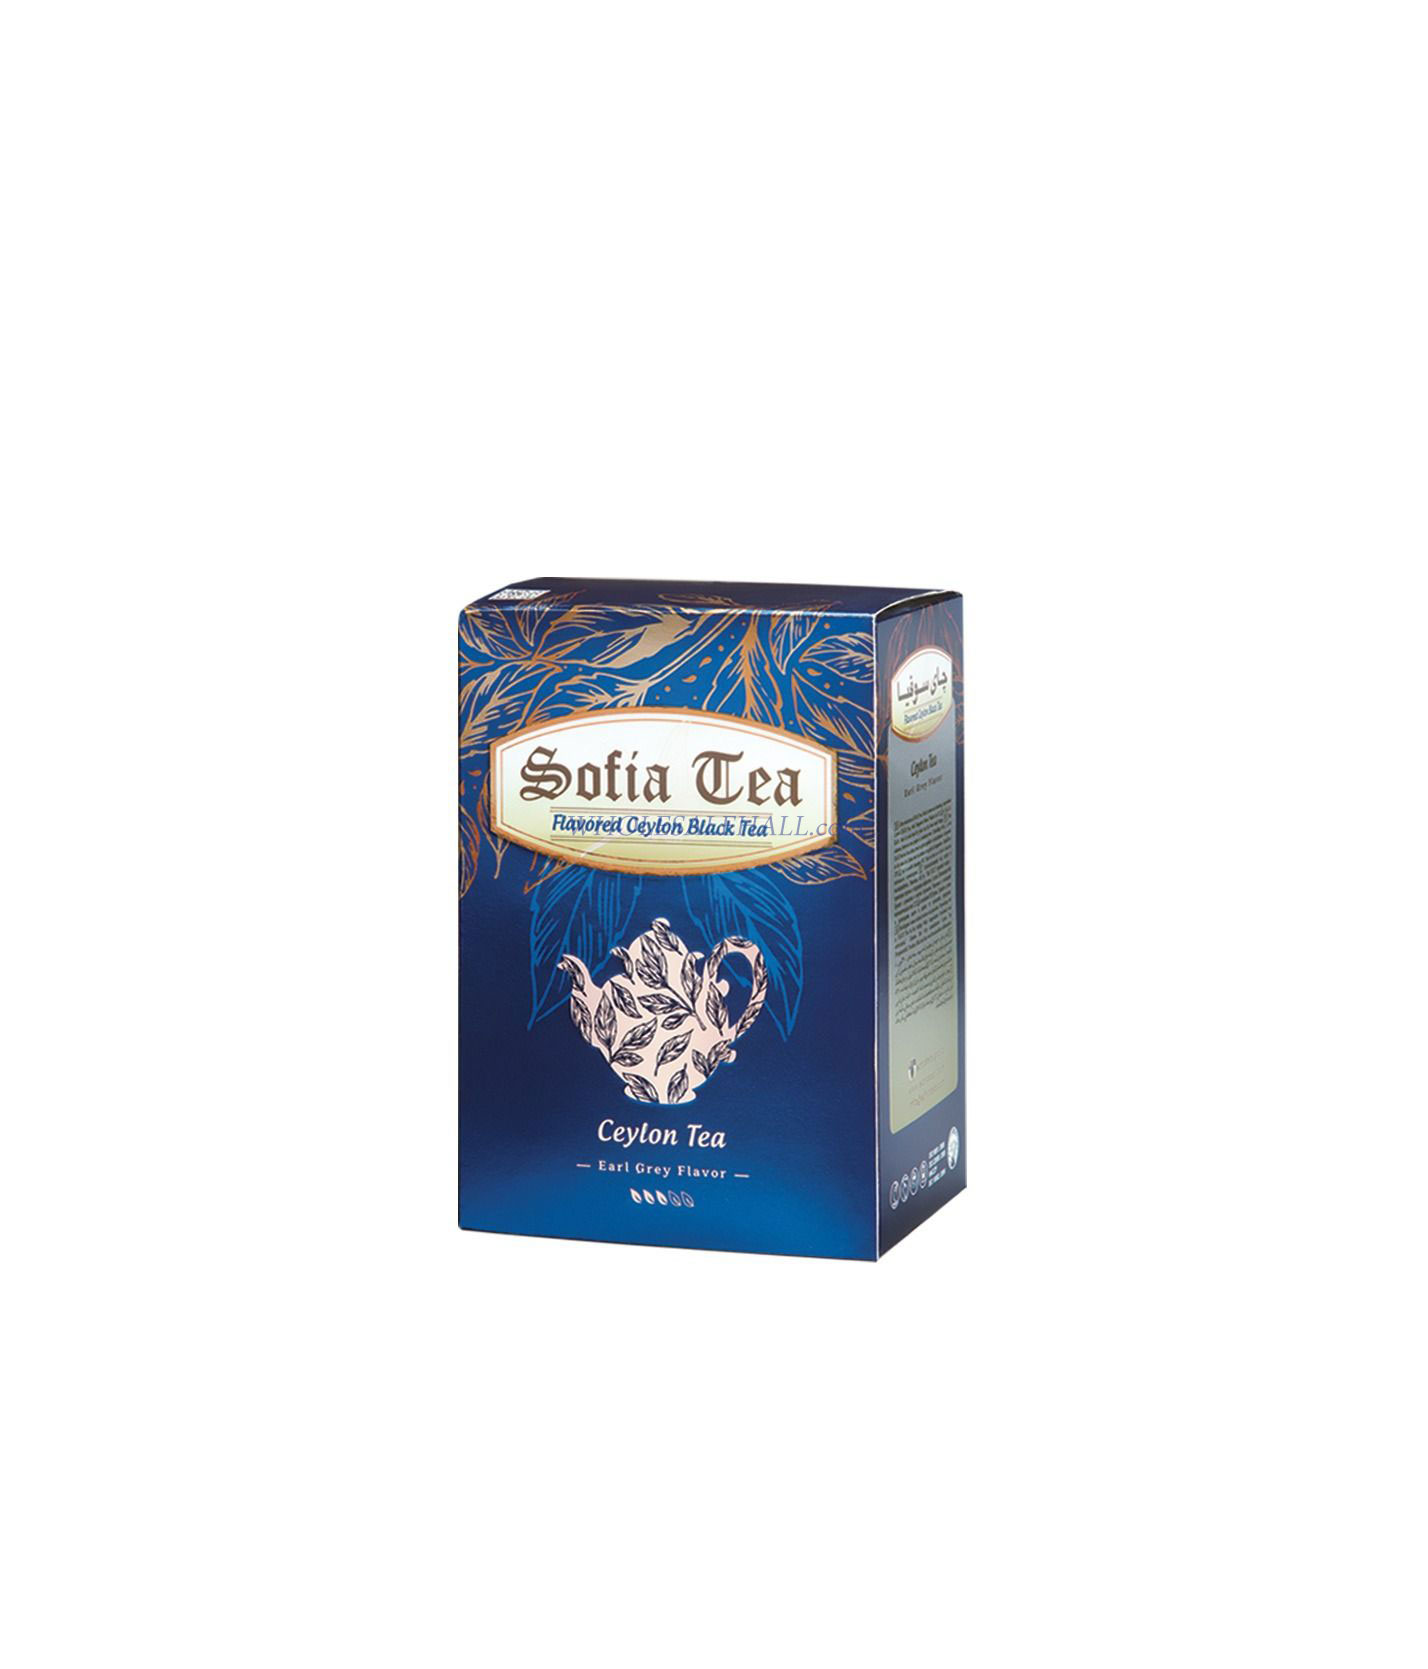 Sophia's fragrant fragrant tea